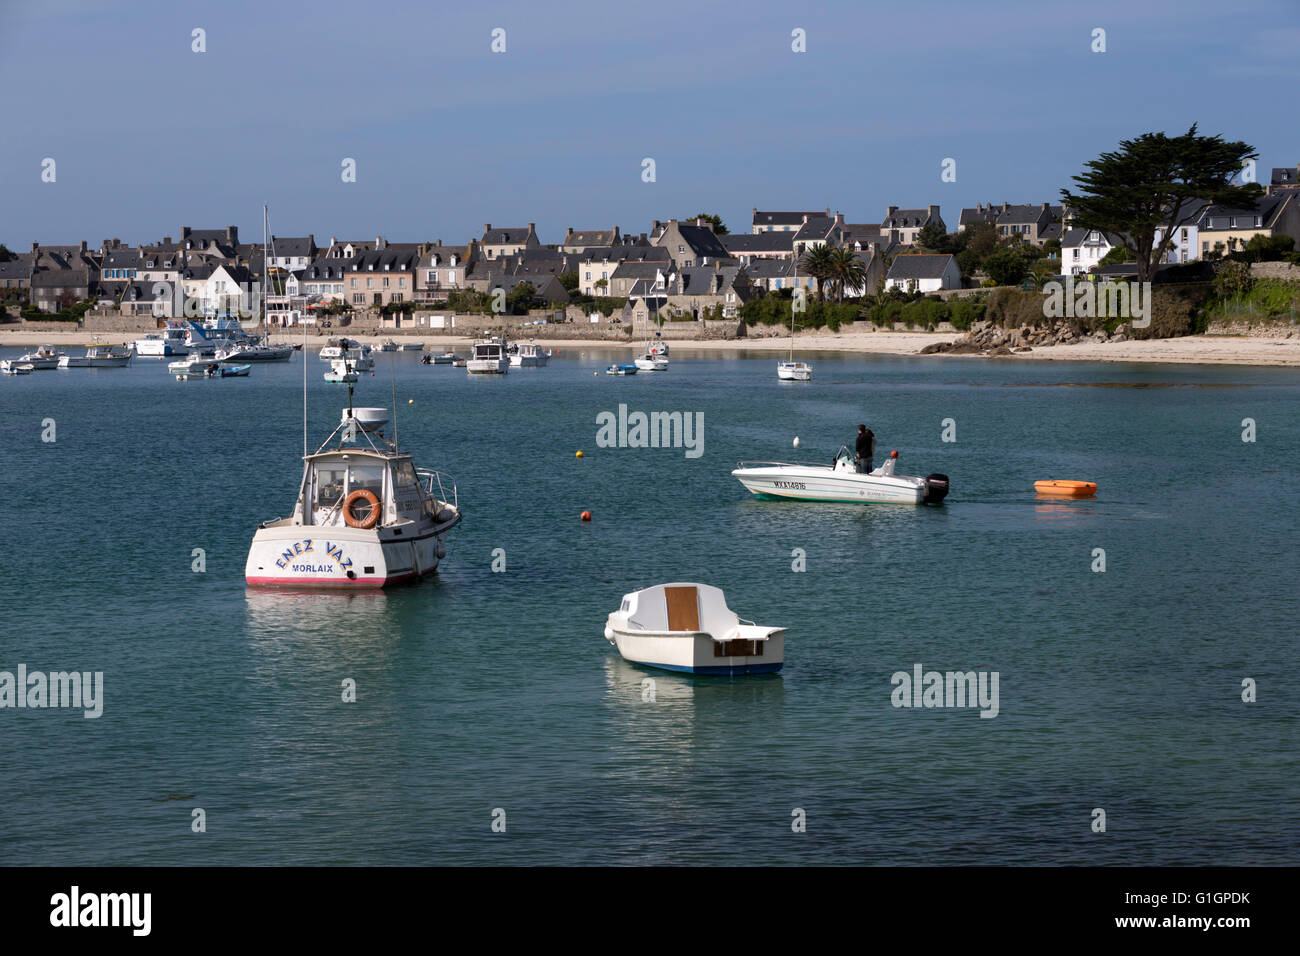 View over port, Ile de Batz, near Roscoff, Finistere, Brittany, France, Europe Stock Photo